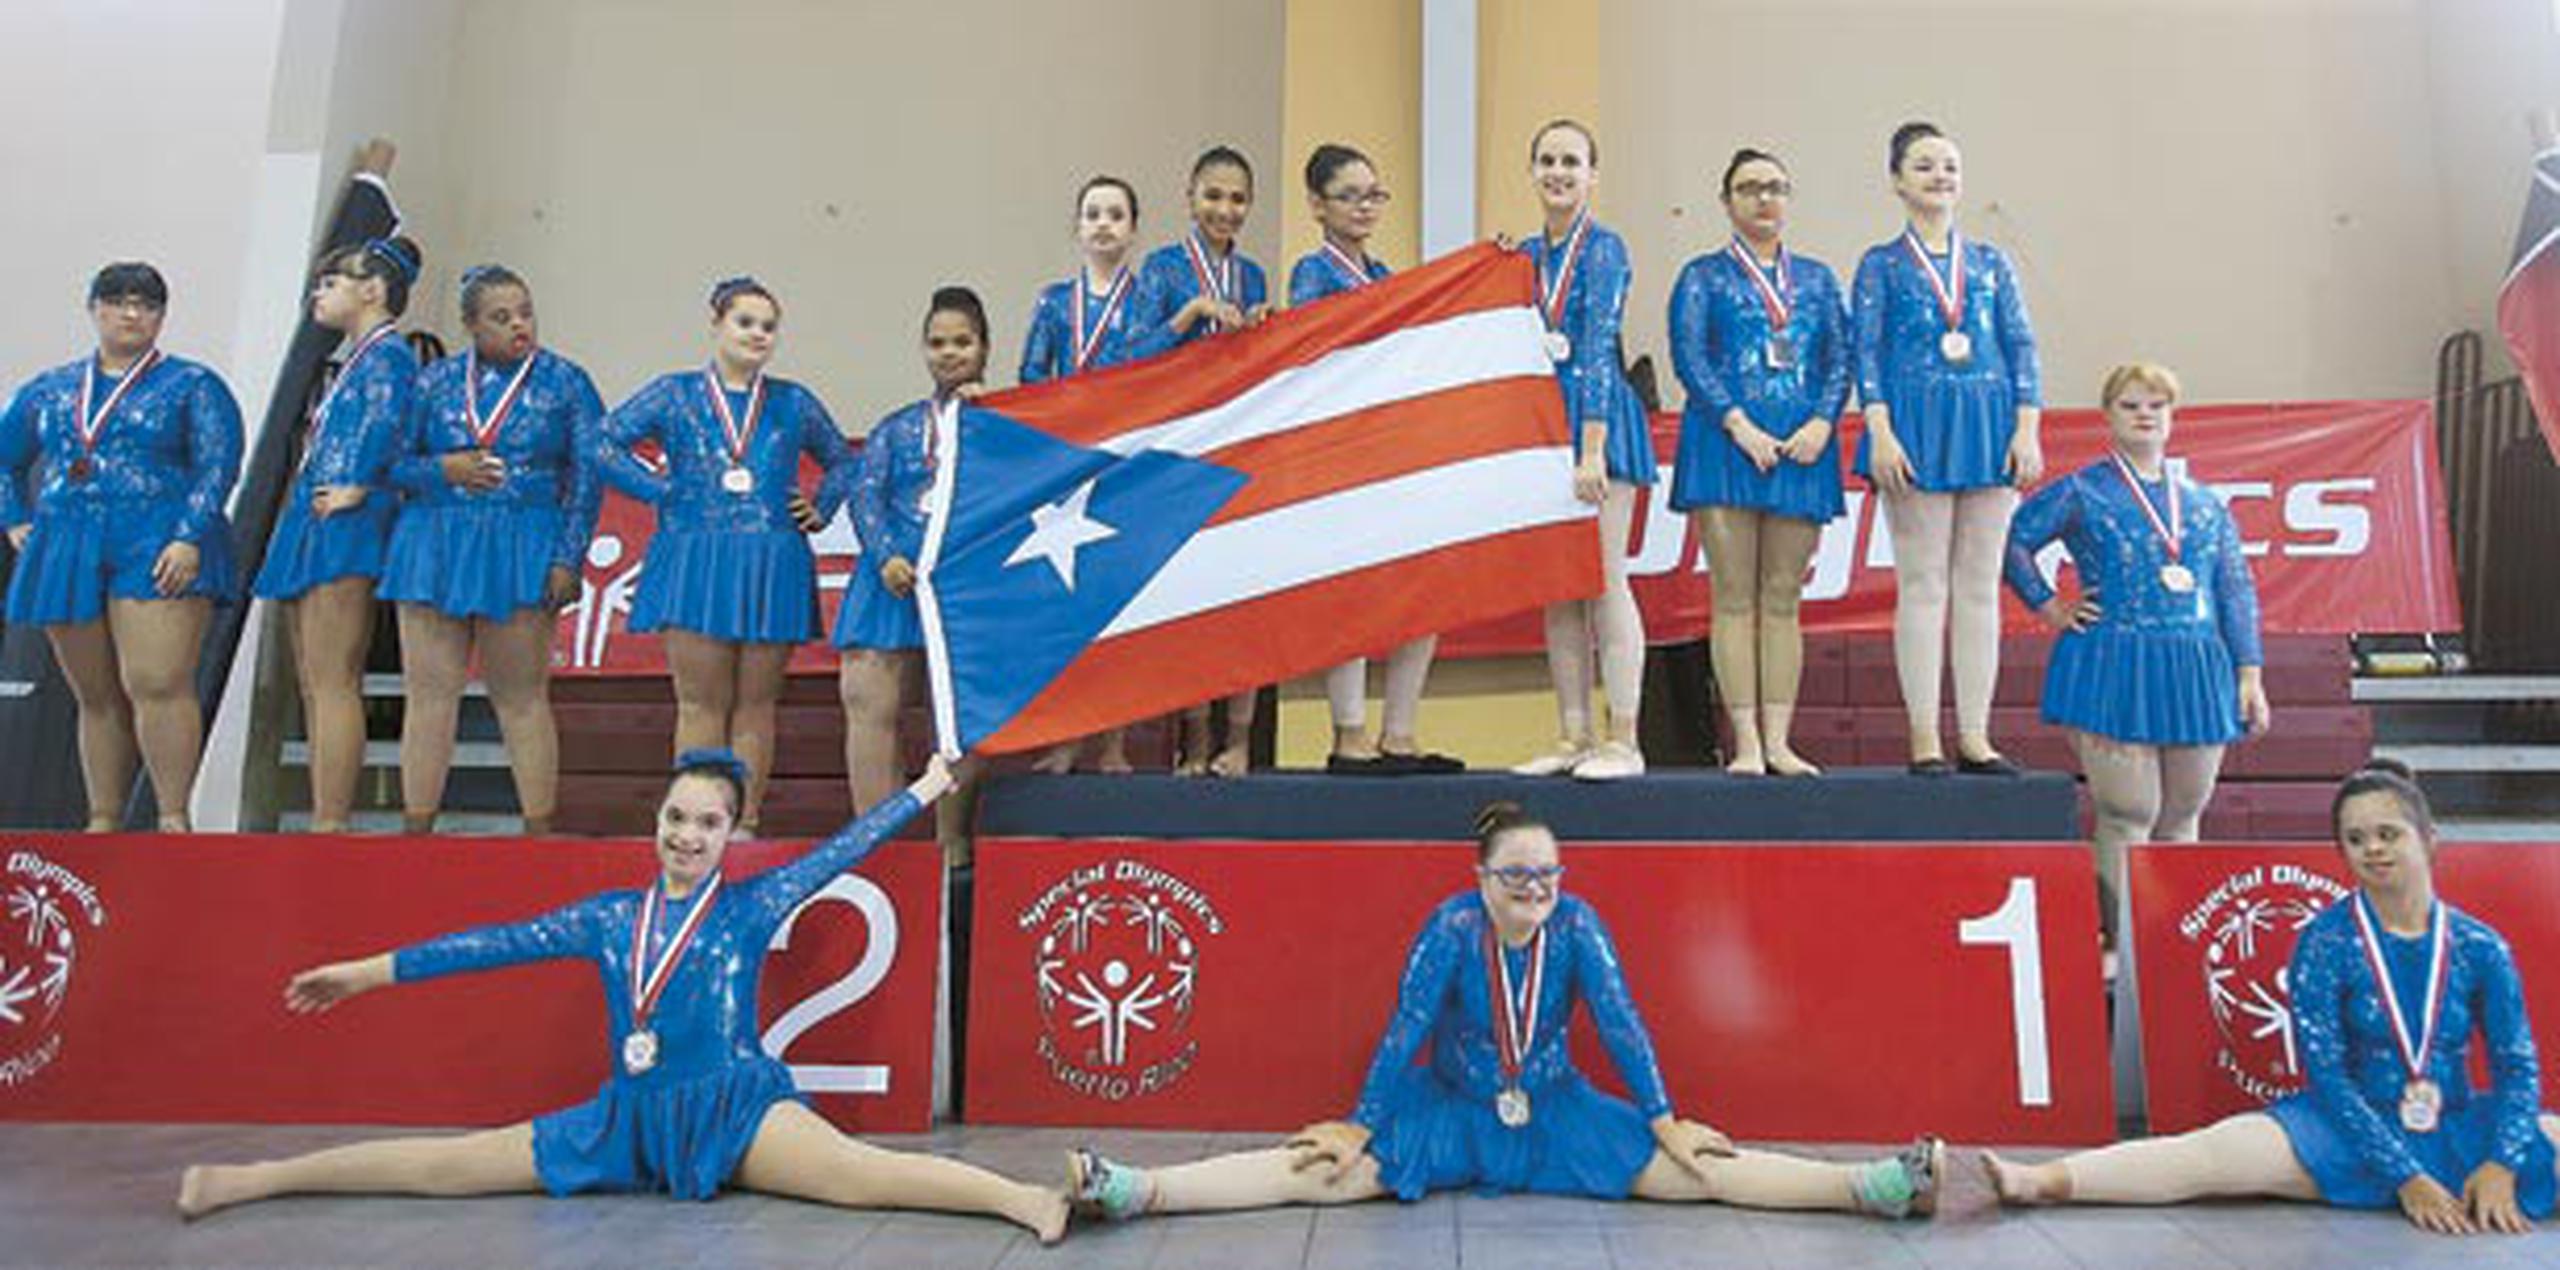 La delegación de Puerto Rico para los Juegos Mundiales de Los Ángeles participará, entre otras disciplinas, en gimnasia rítmica y bolos. (Archivo)